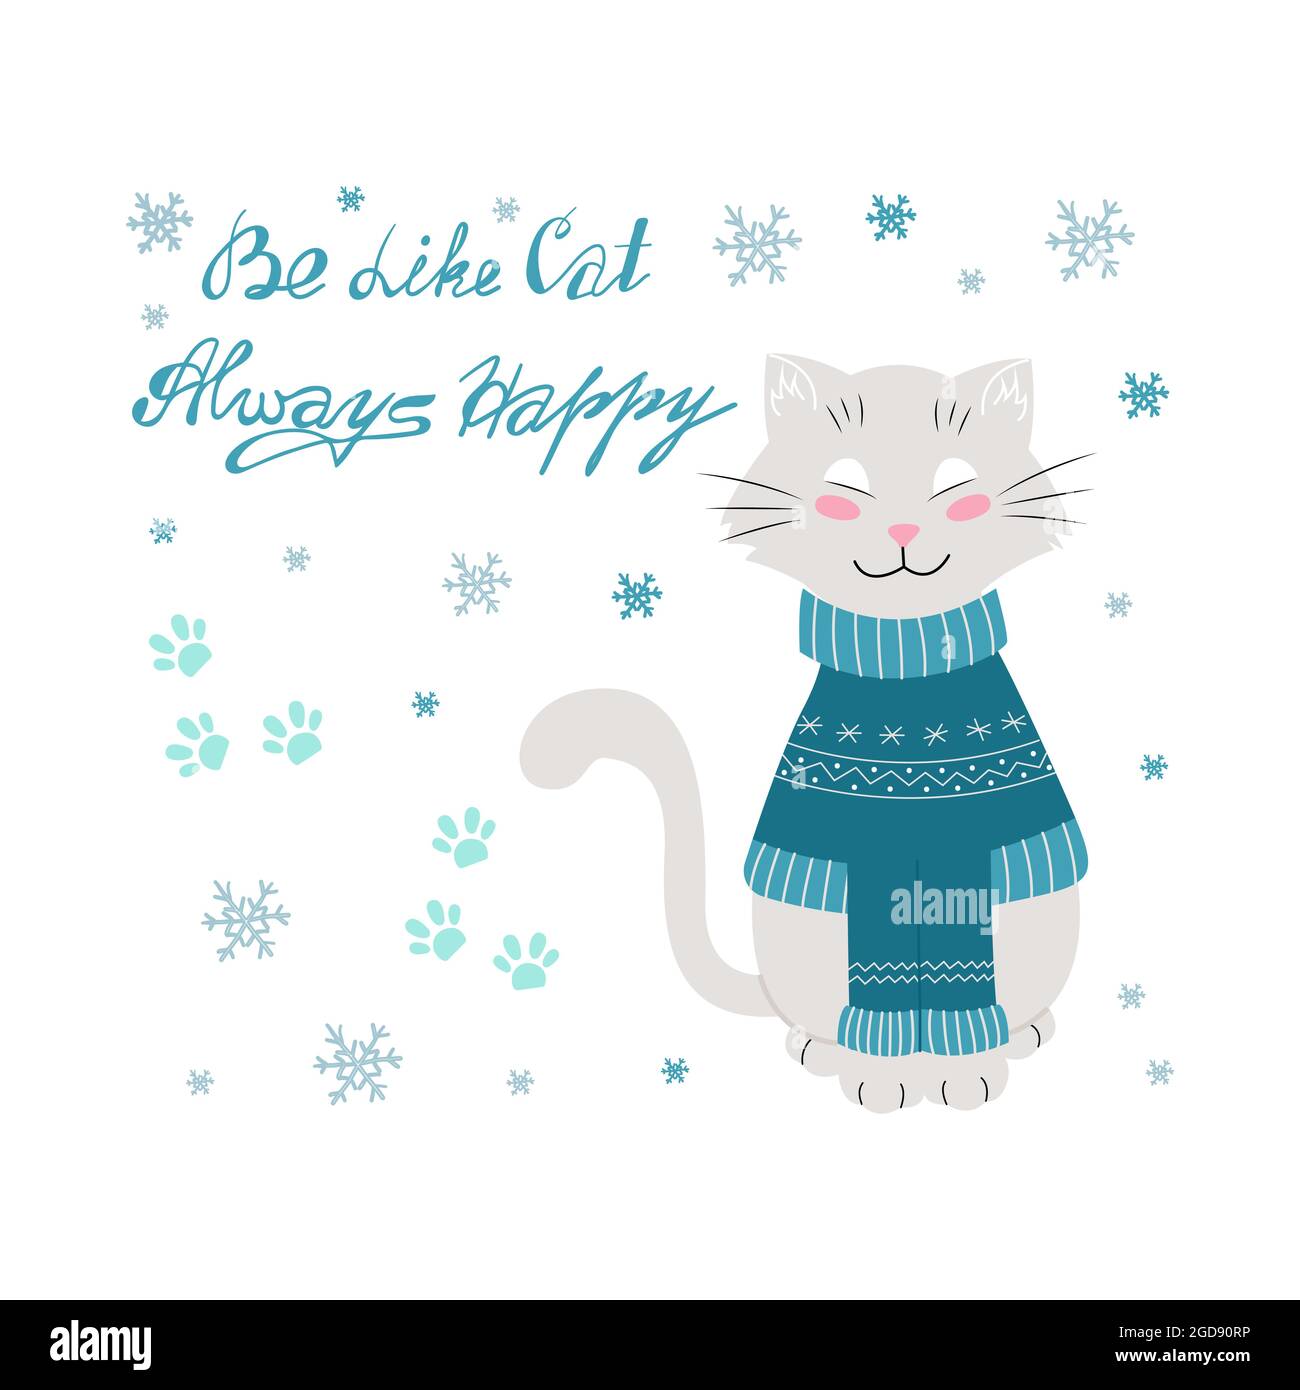 Katze im Winterpullover, handgeschrieben wie eine Katze, immer fröhliche Schriftzüge. Vektorgrafik im flachen Stil Stock Vektor